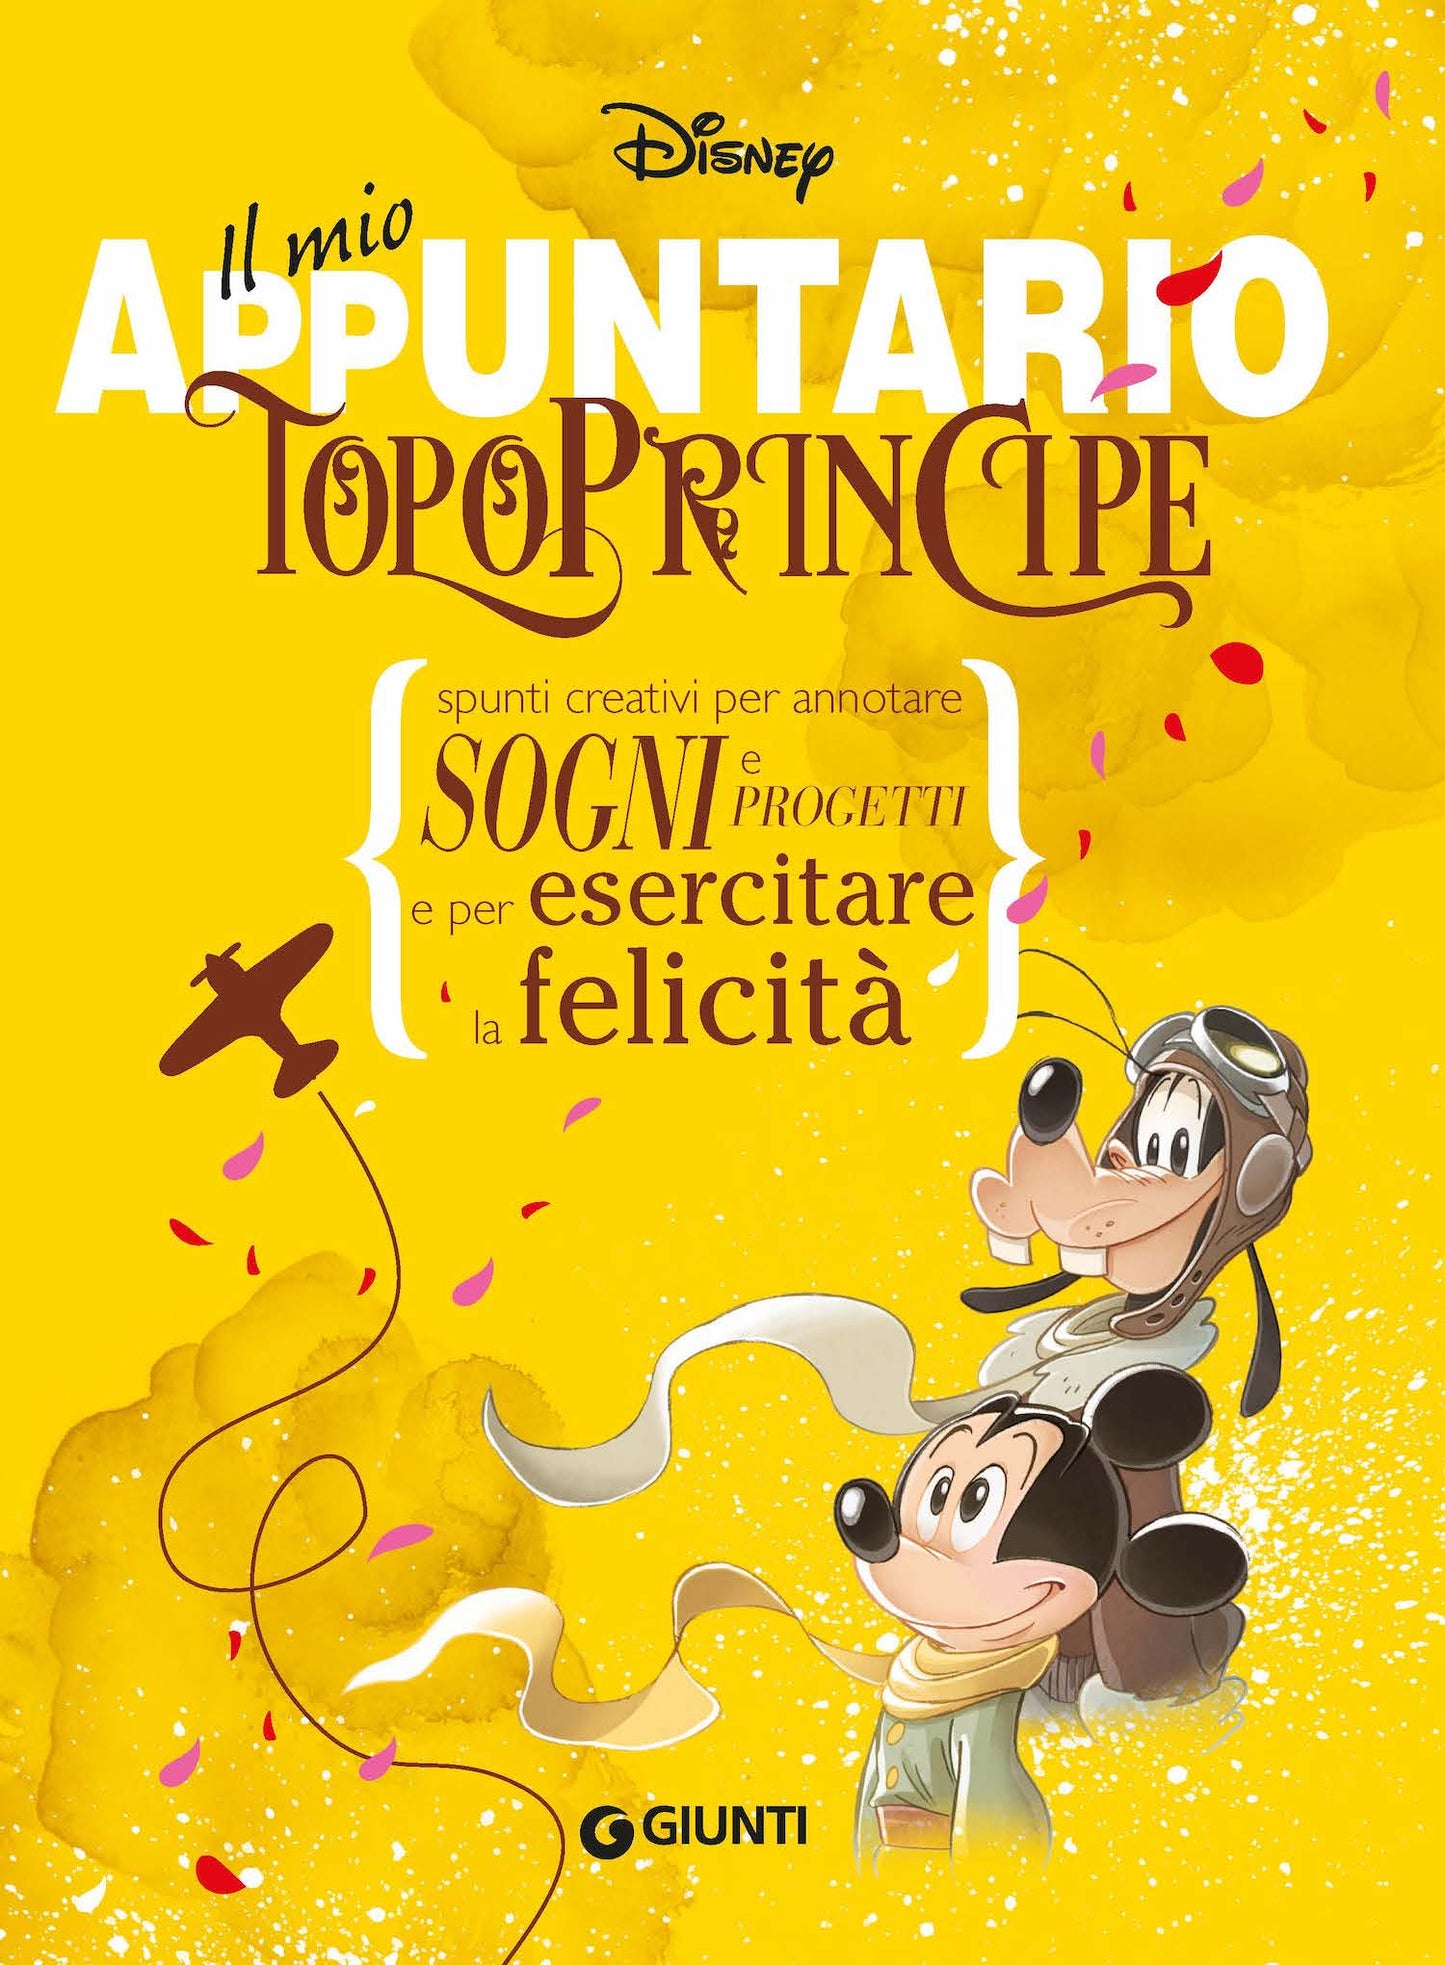 TopoPrincipe - Il mio appuntario. Spunti creativi per appuntare sogni e progetti e per esercitare la felicità